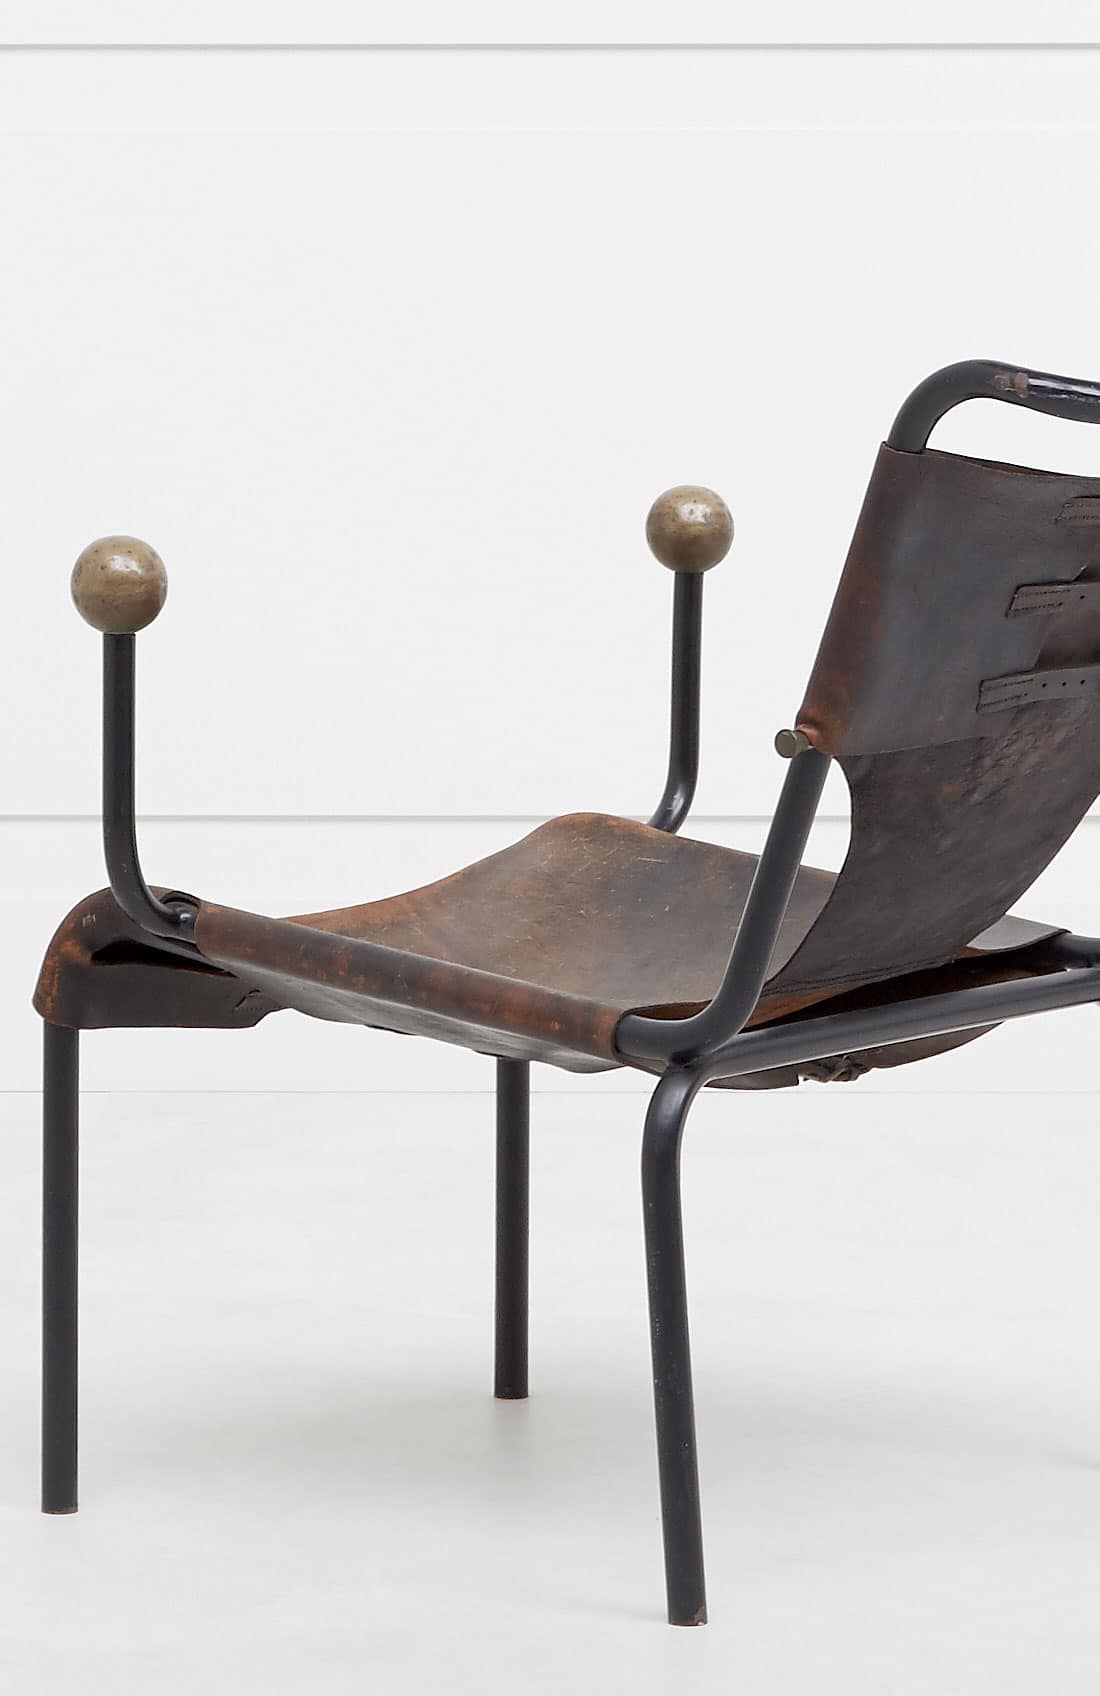 Lina Bo Bardi, Rare et originale chaise “Bola”, vue 03